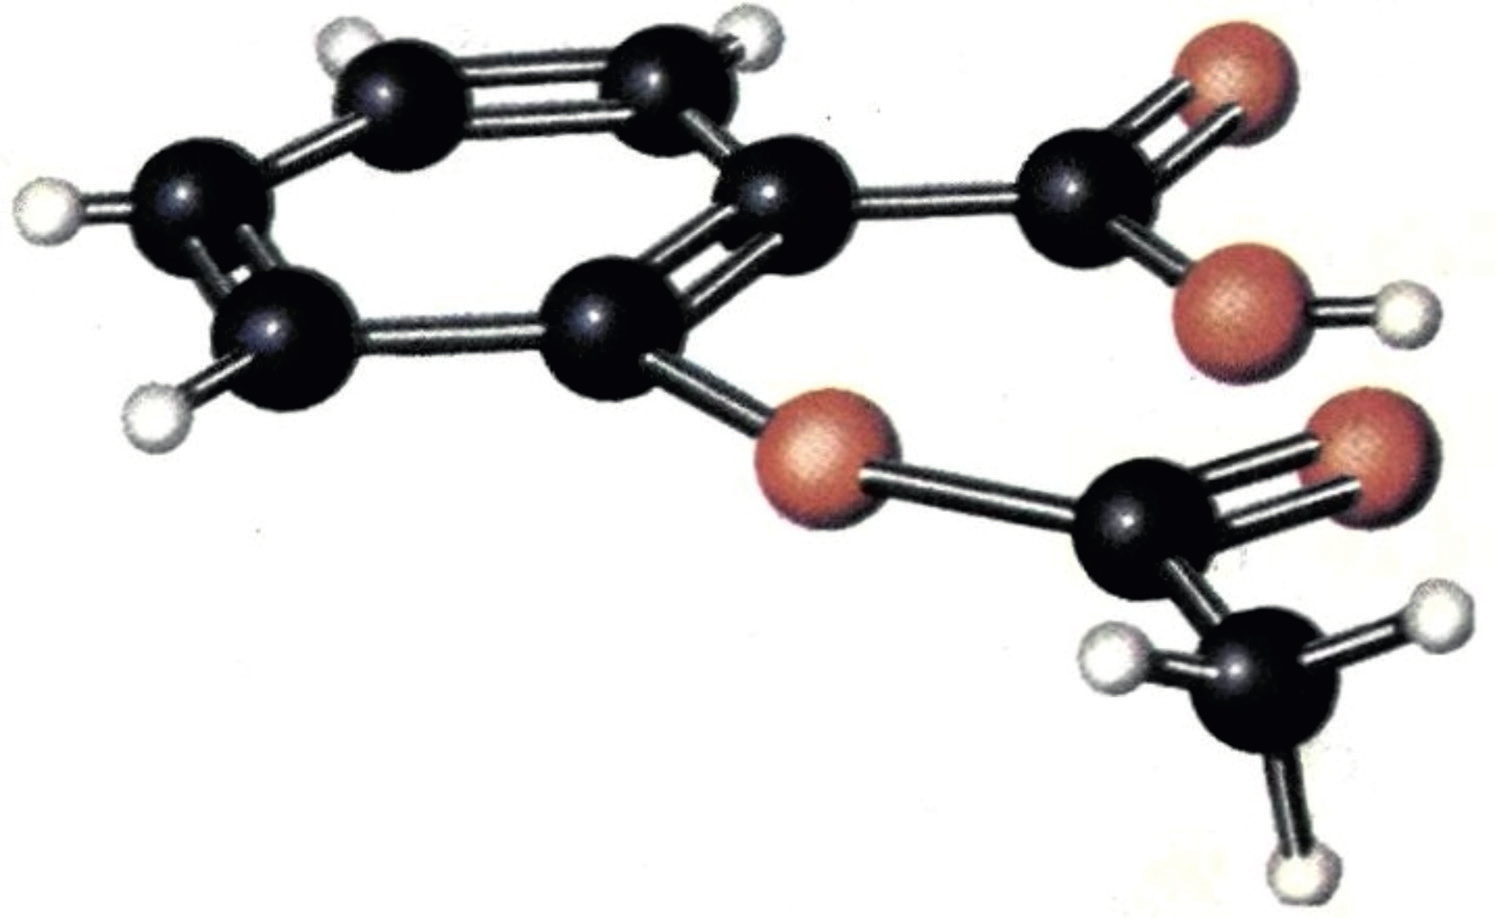 Ετεροκυκλικές ονομάζονται οι κυκλικές ενώσεις στις οποίες ο δακτύλιος σχηματίζεται όχι μόνο από άτομα άνθρακα, αλλά και από άτομα άλλου στοιχείου, συνήθως O, N.